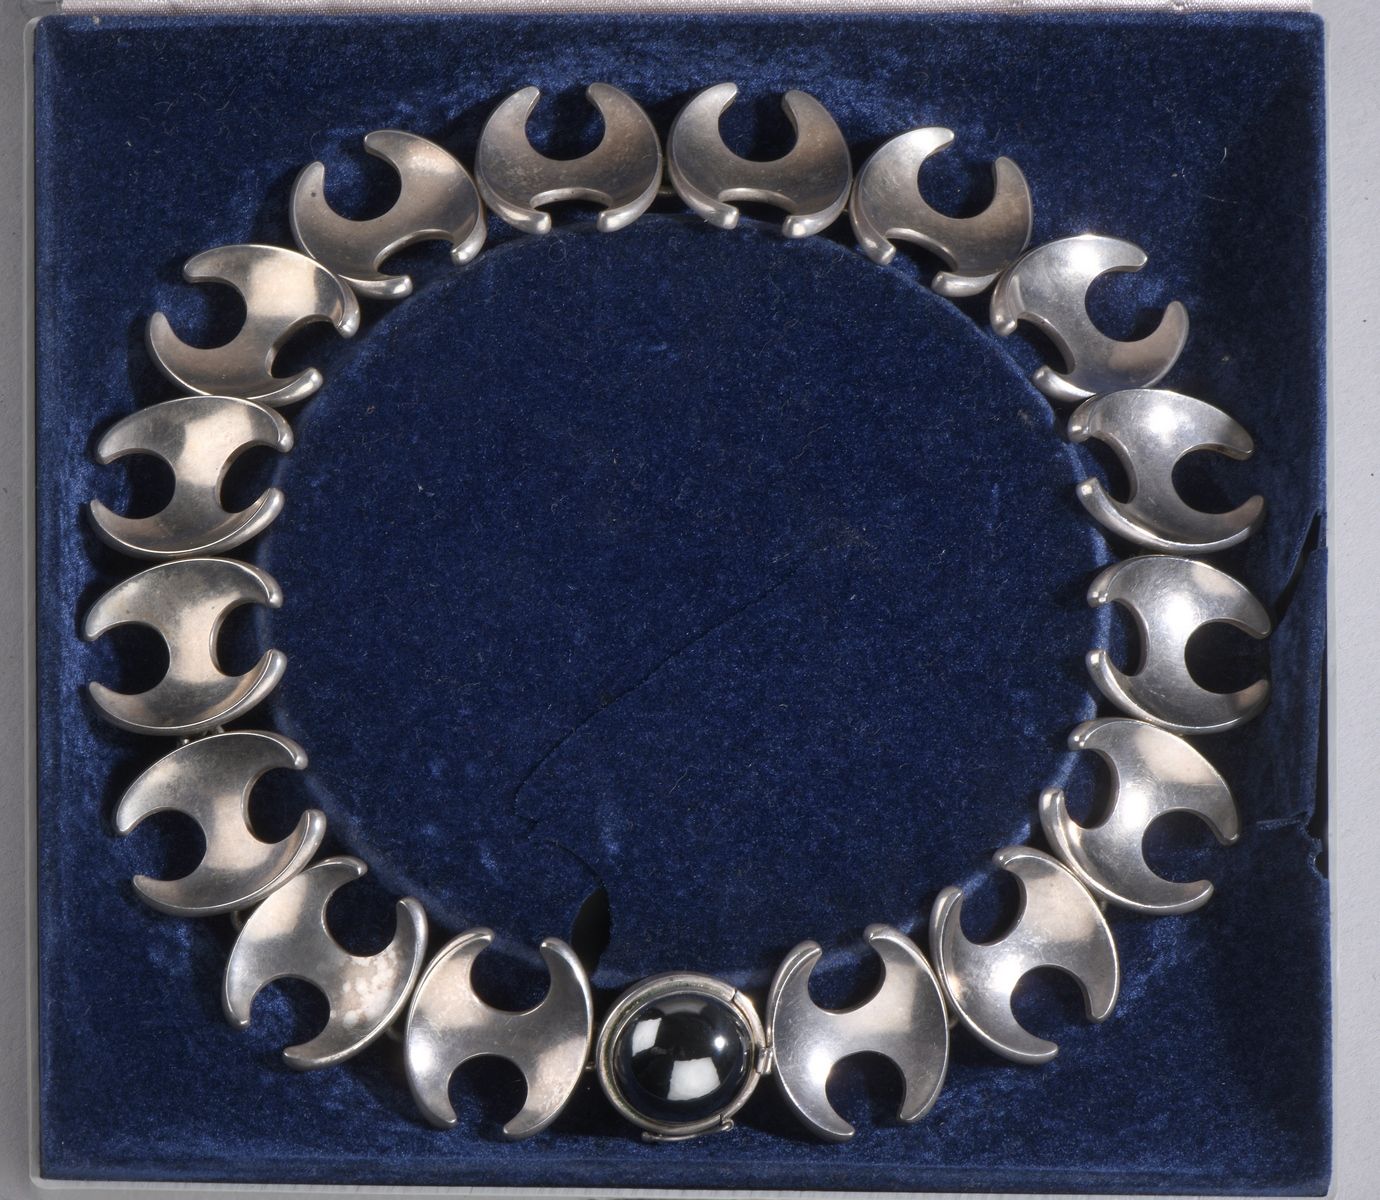 Null 亨宁-科佩尔的乔治-延森作品
银制（925）项链 "130 B"，链节组成 "H"。扣子上镶嵌着一颗大的凸圆形血红石。
长41厘米 - 毛重：141.&hellip;